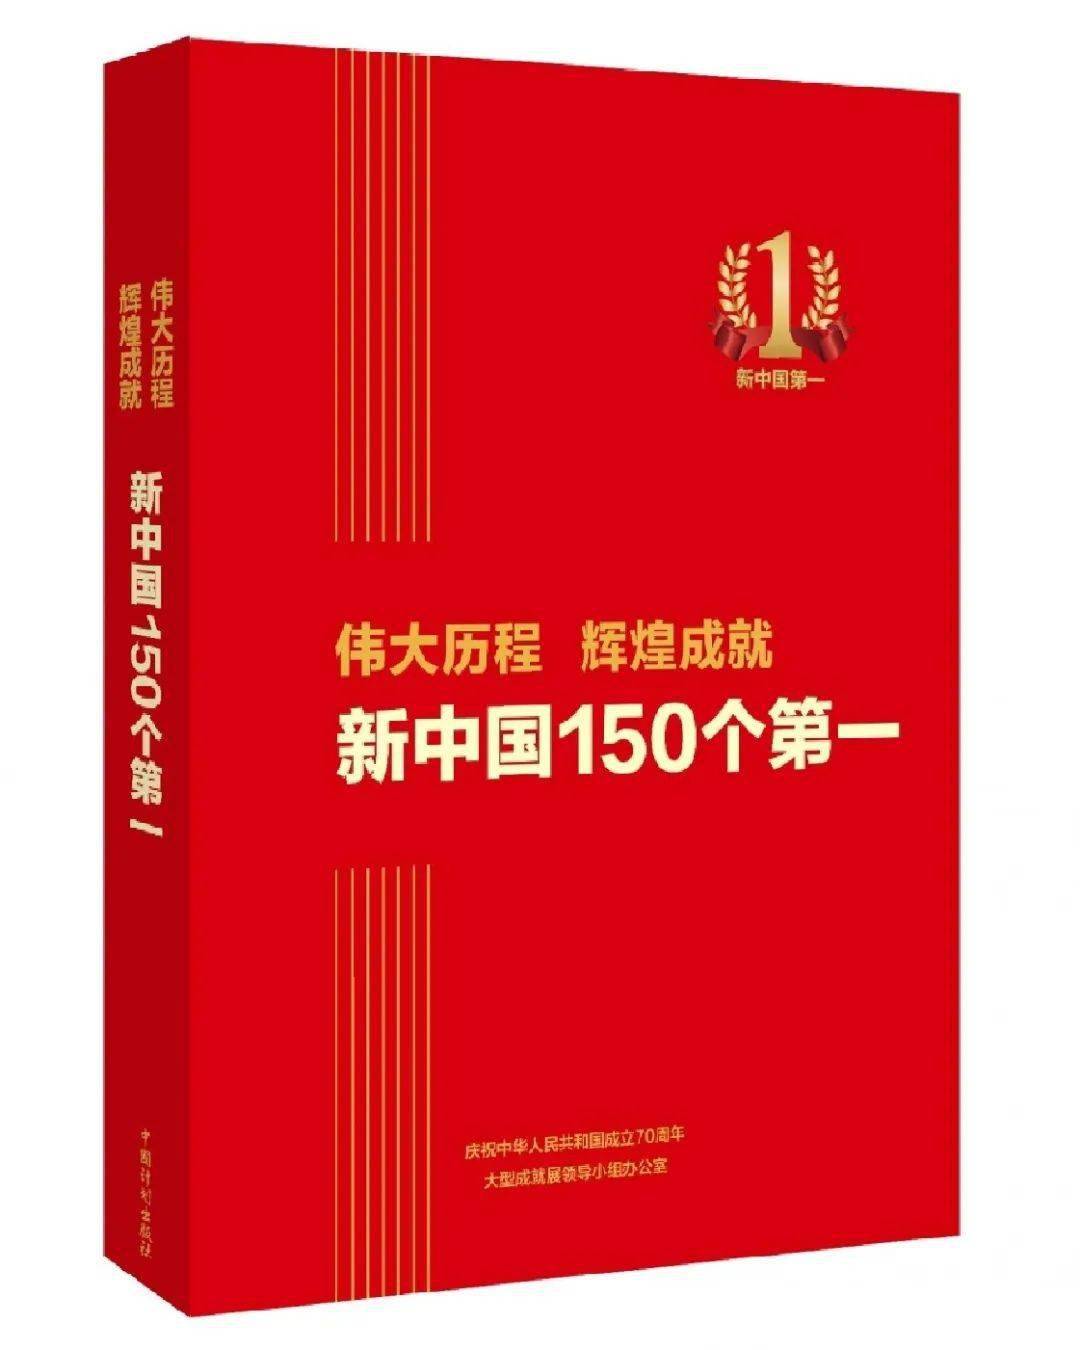 新中国70周年专题画册伟大历程辉煌成就即将上市